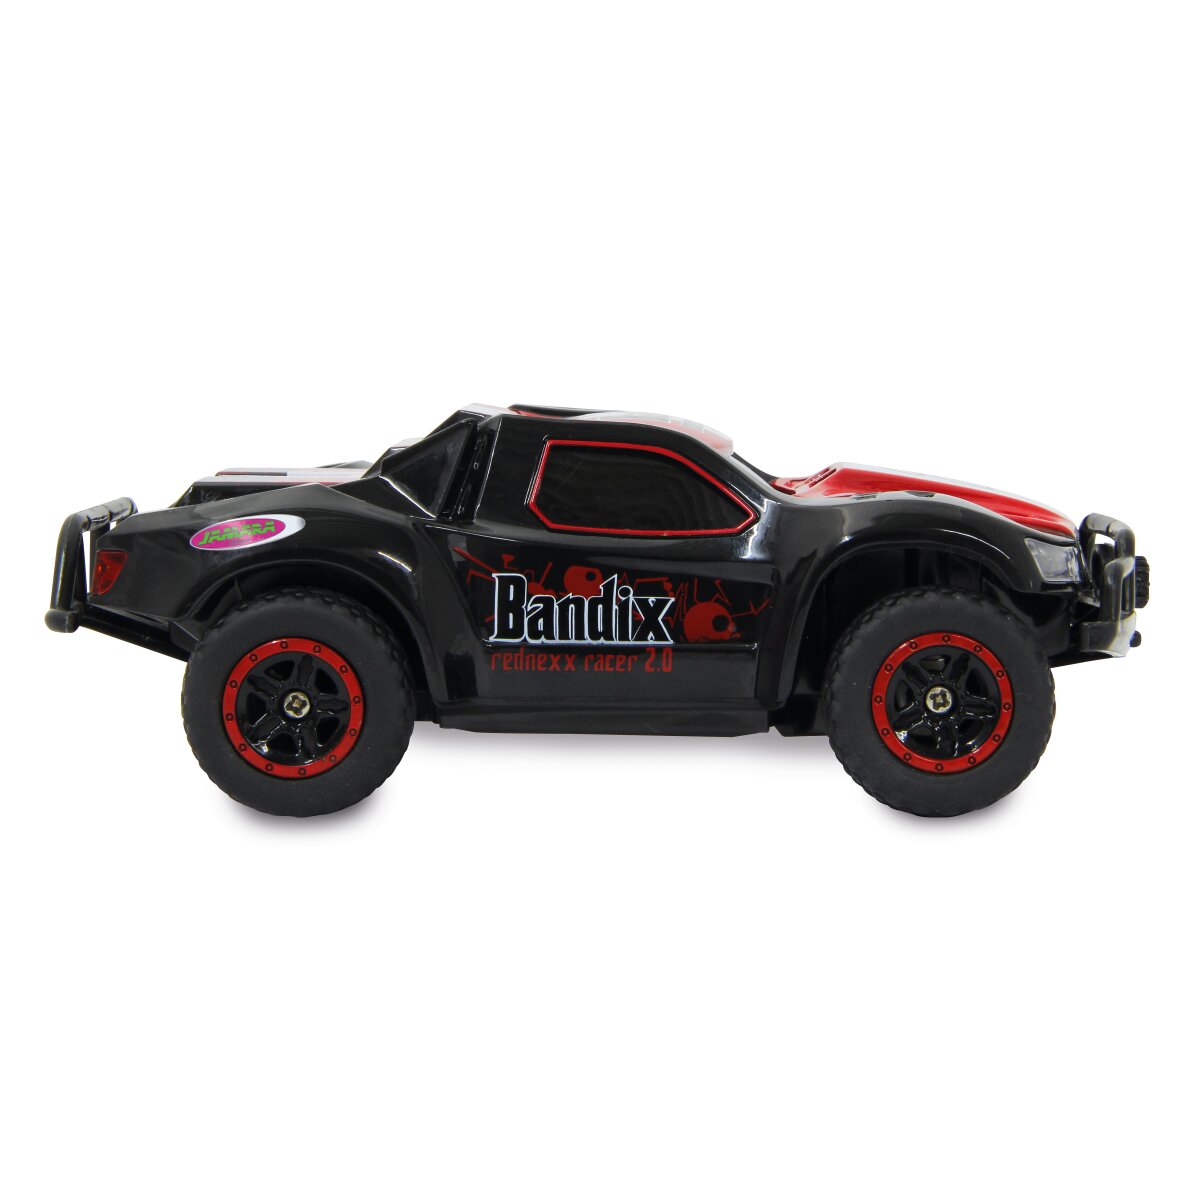 Bandix rednexx 2.0 Monstertruck 4WD 2,4GHz mit Licht 